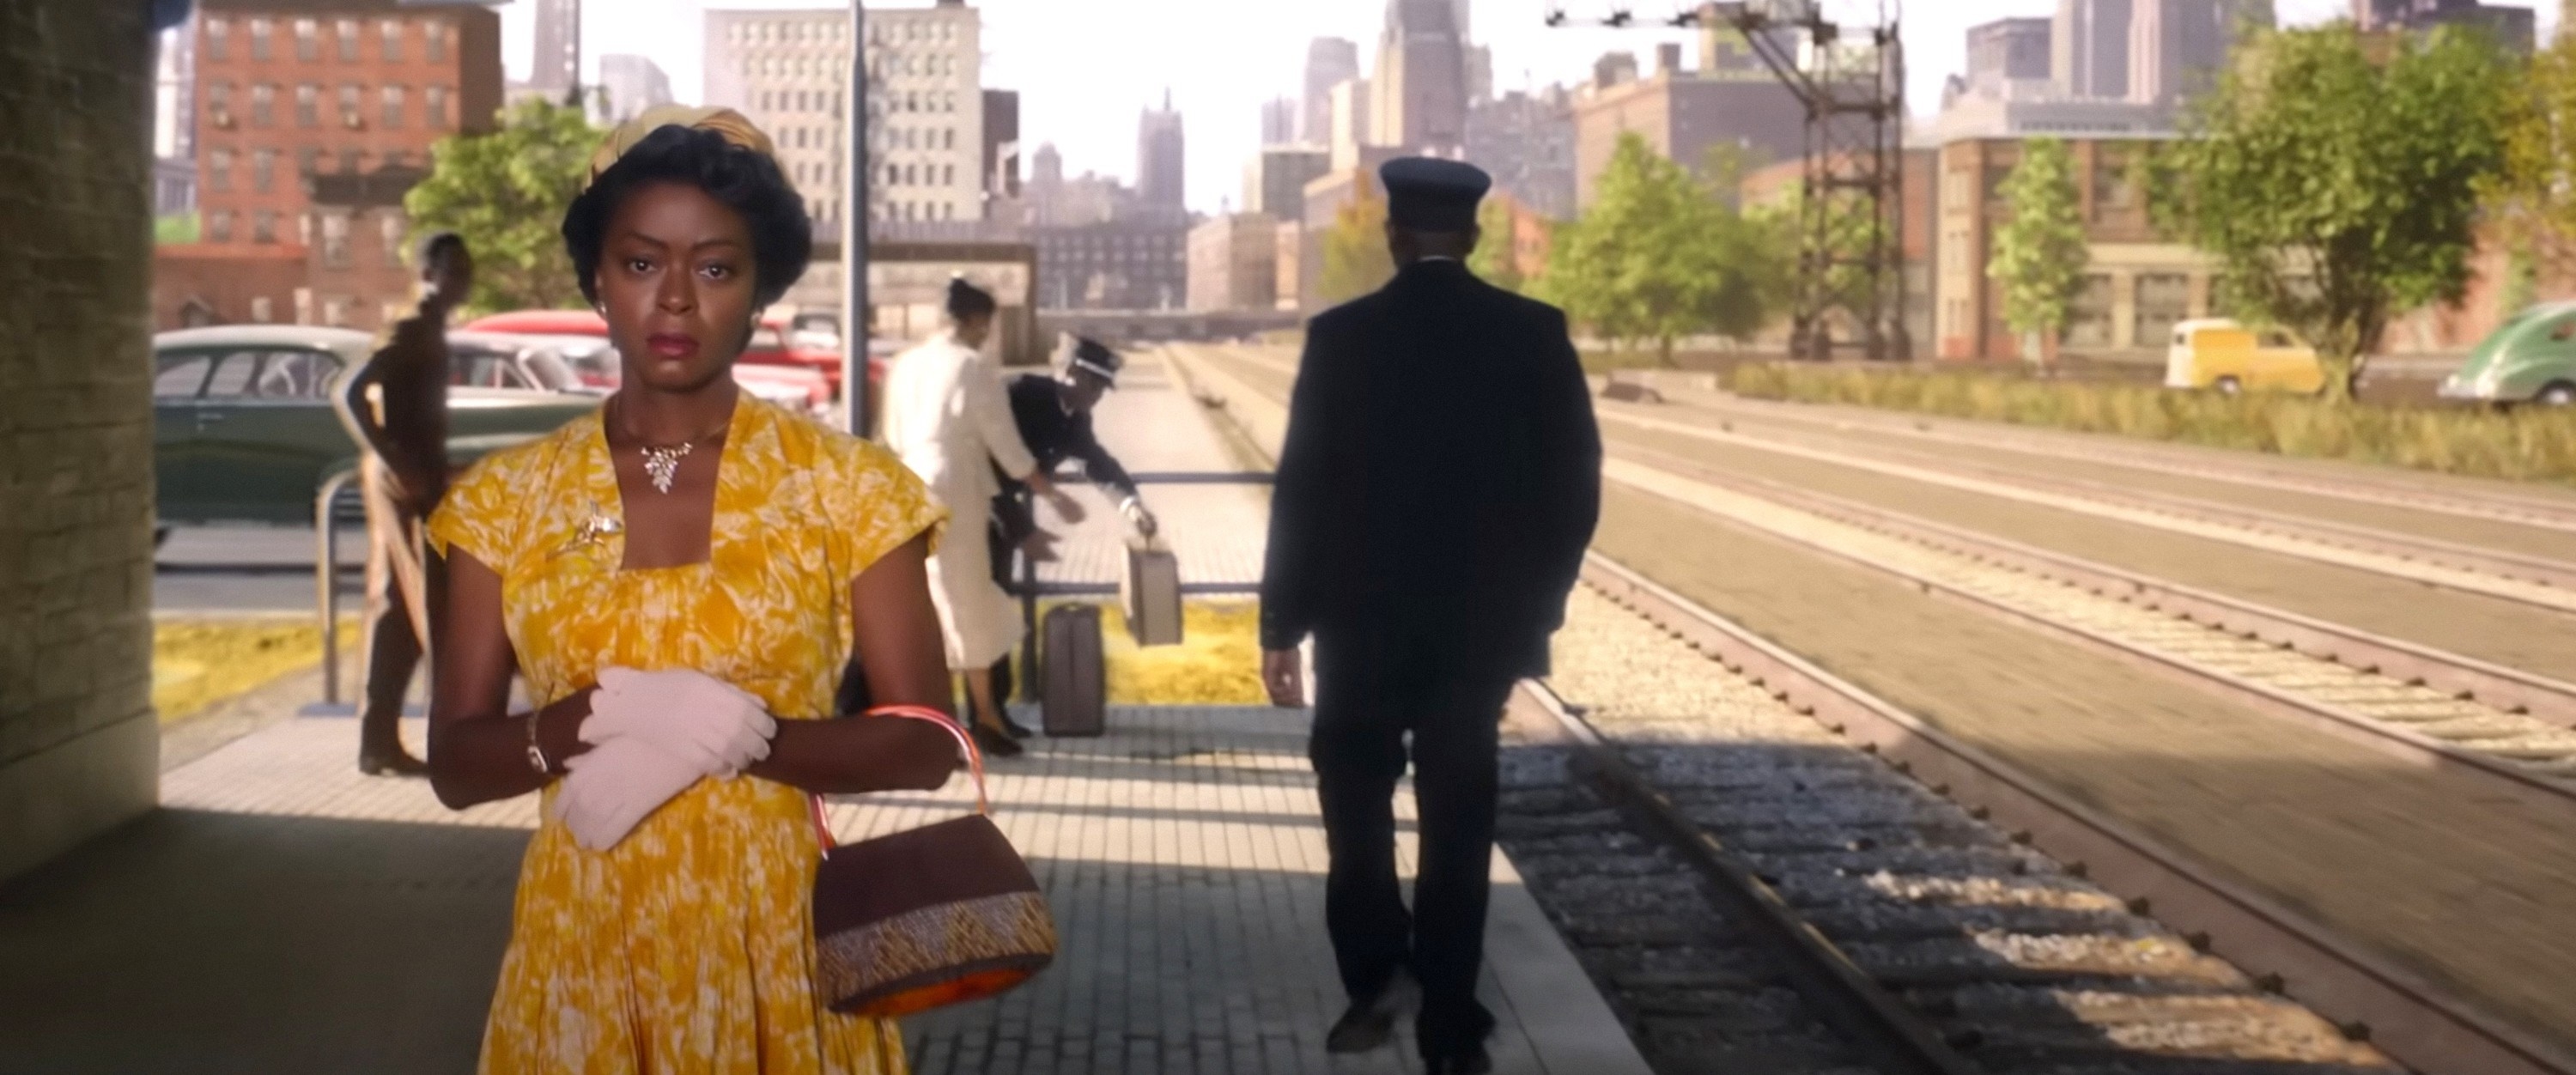 Mamie Till walking along a train platform